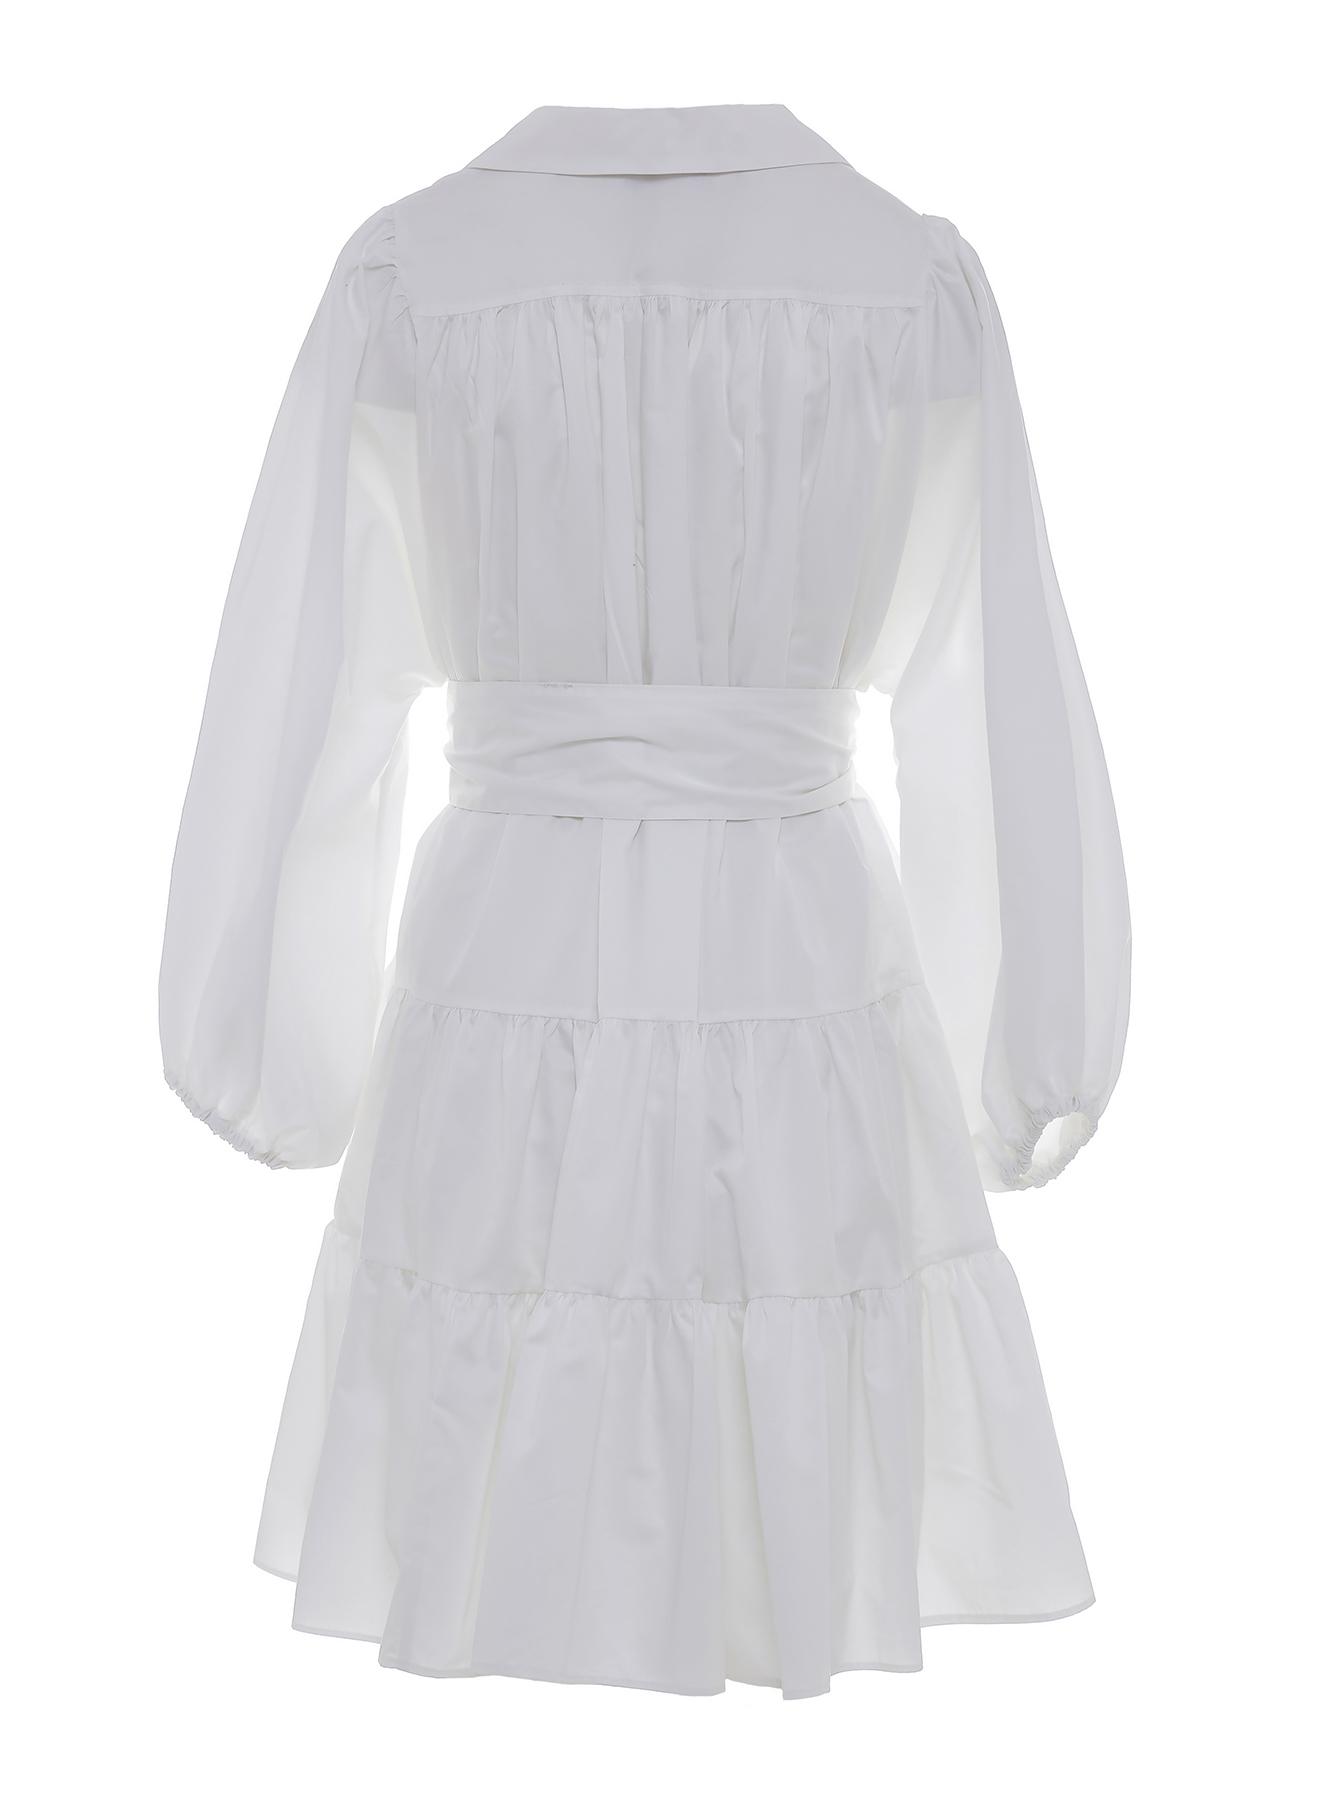 Λευκό κοντό Φόρεμα ποπλίνα με ζώνη "MARLEE" Devotion Twins - 2